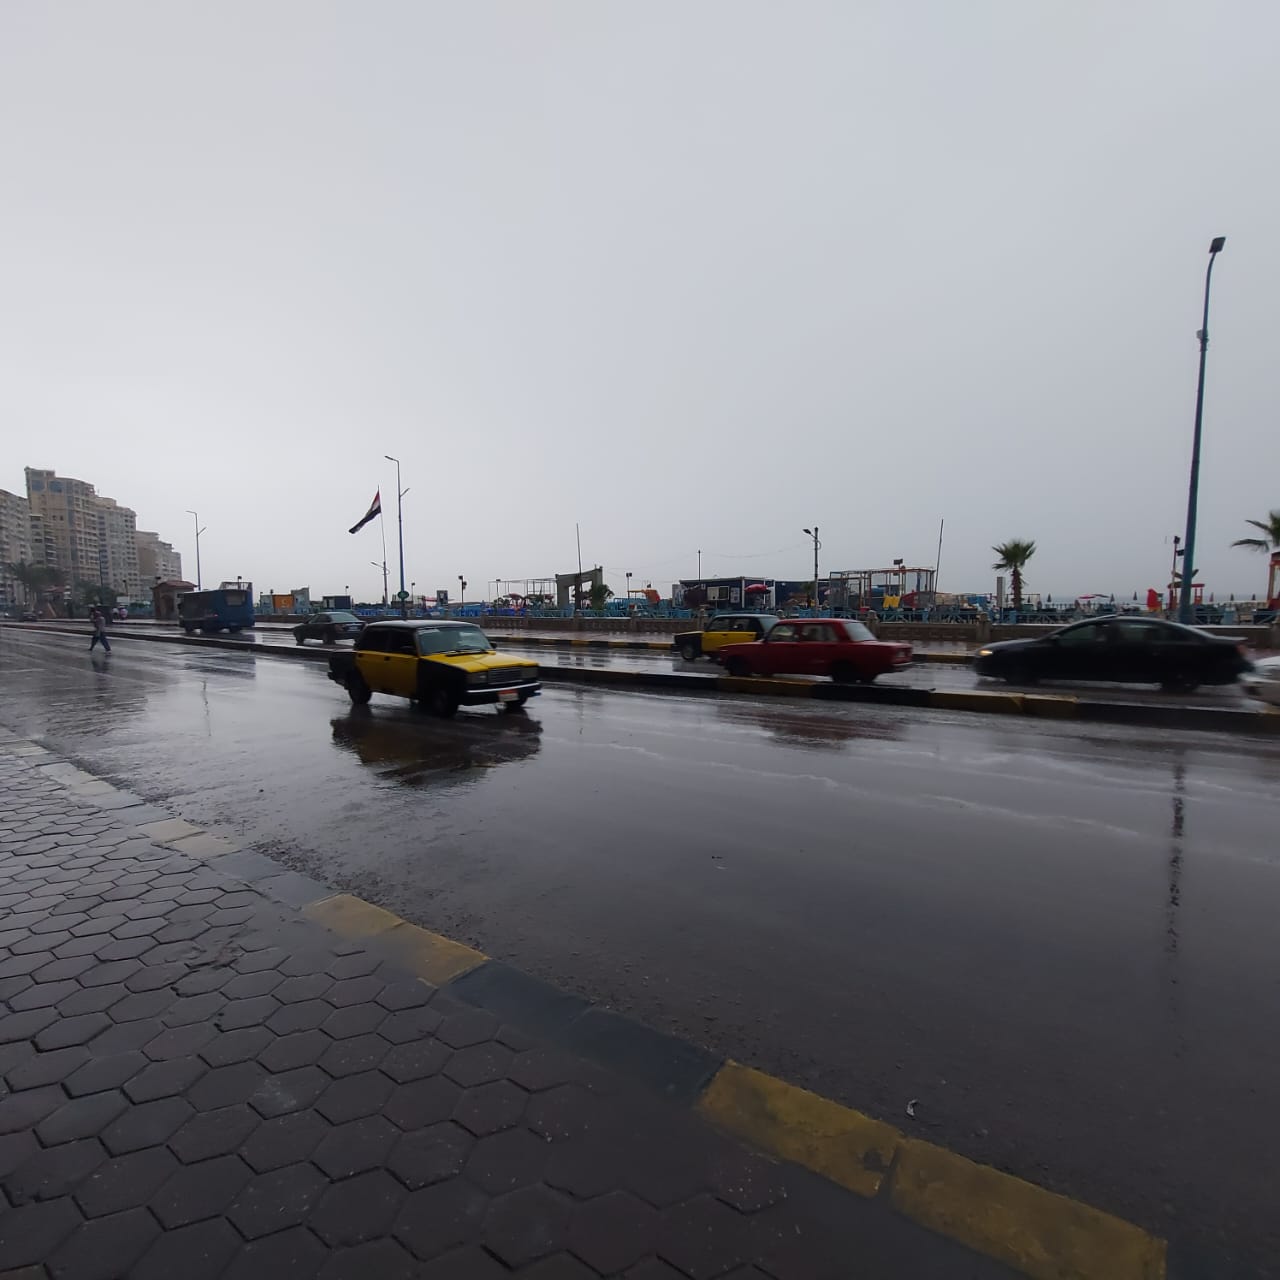 لأول مرة فى يونيو.. هطول أمطار غزيرة بالإسكندرية مع نشاط فى حركة الرياح (18)